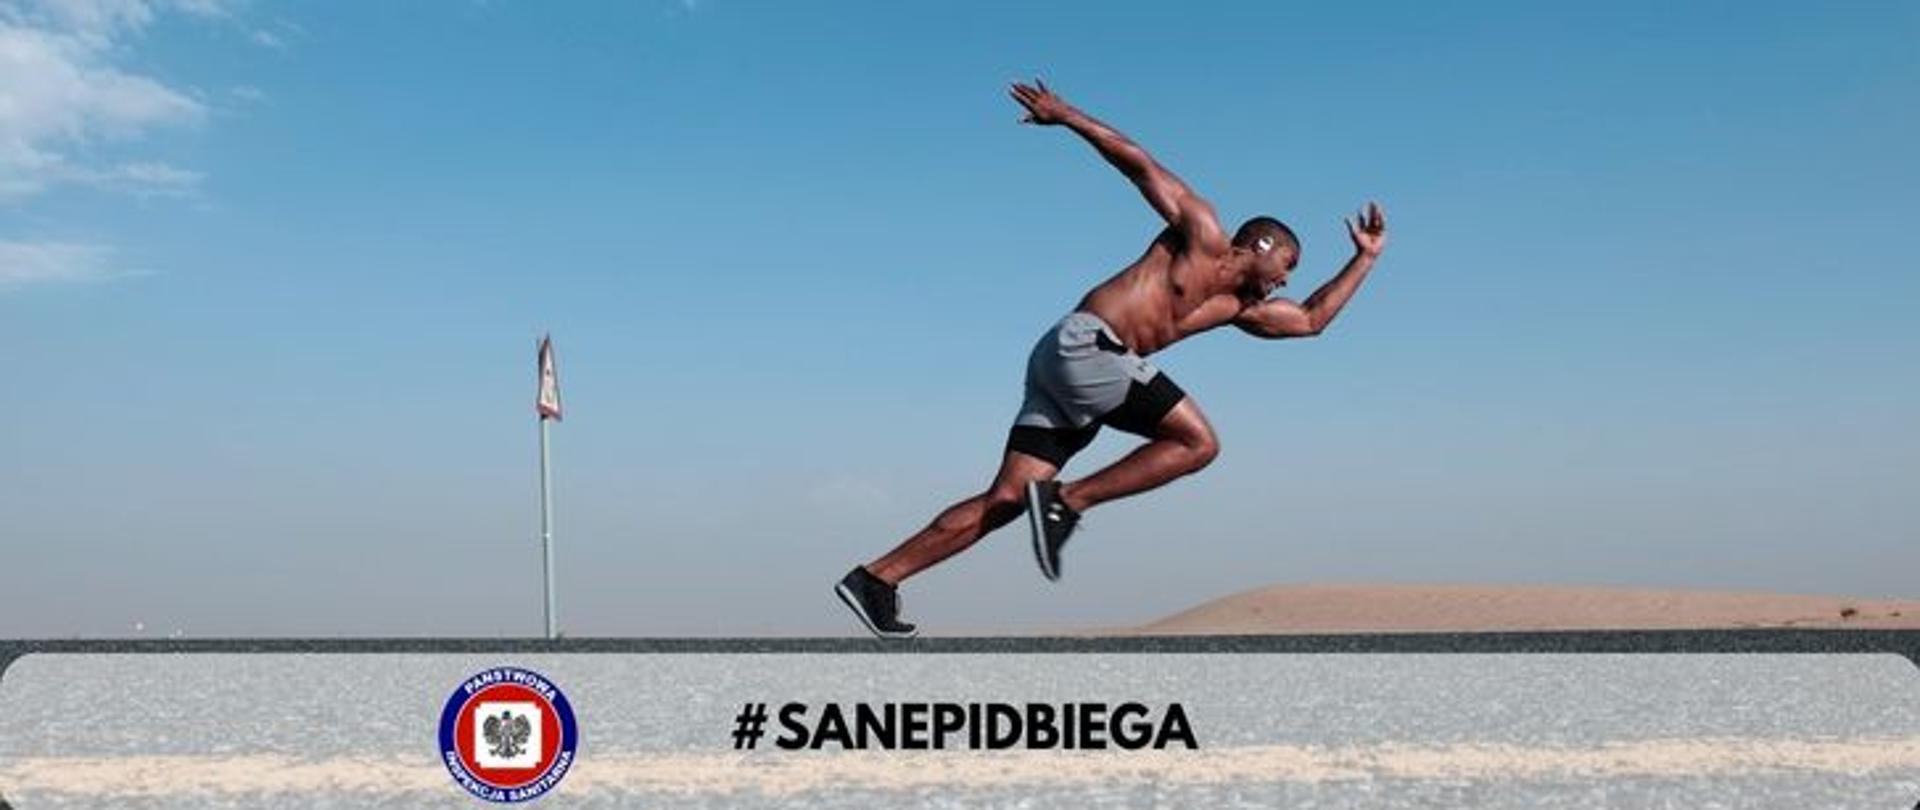 Zdjęcie przedstawia sylwetkę mężczyzny rozpoczynającego bieg. W dolnej części zdjęcia logo Inspekcji Sanitarnej i napis #sanepidbiega